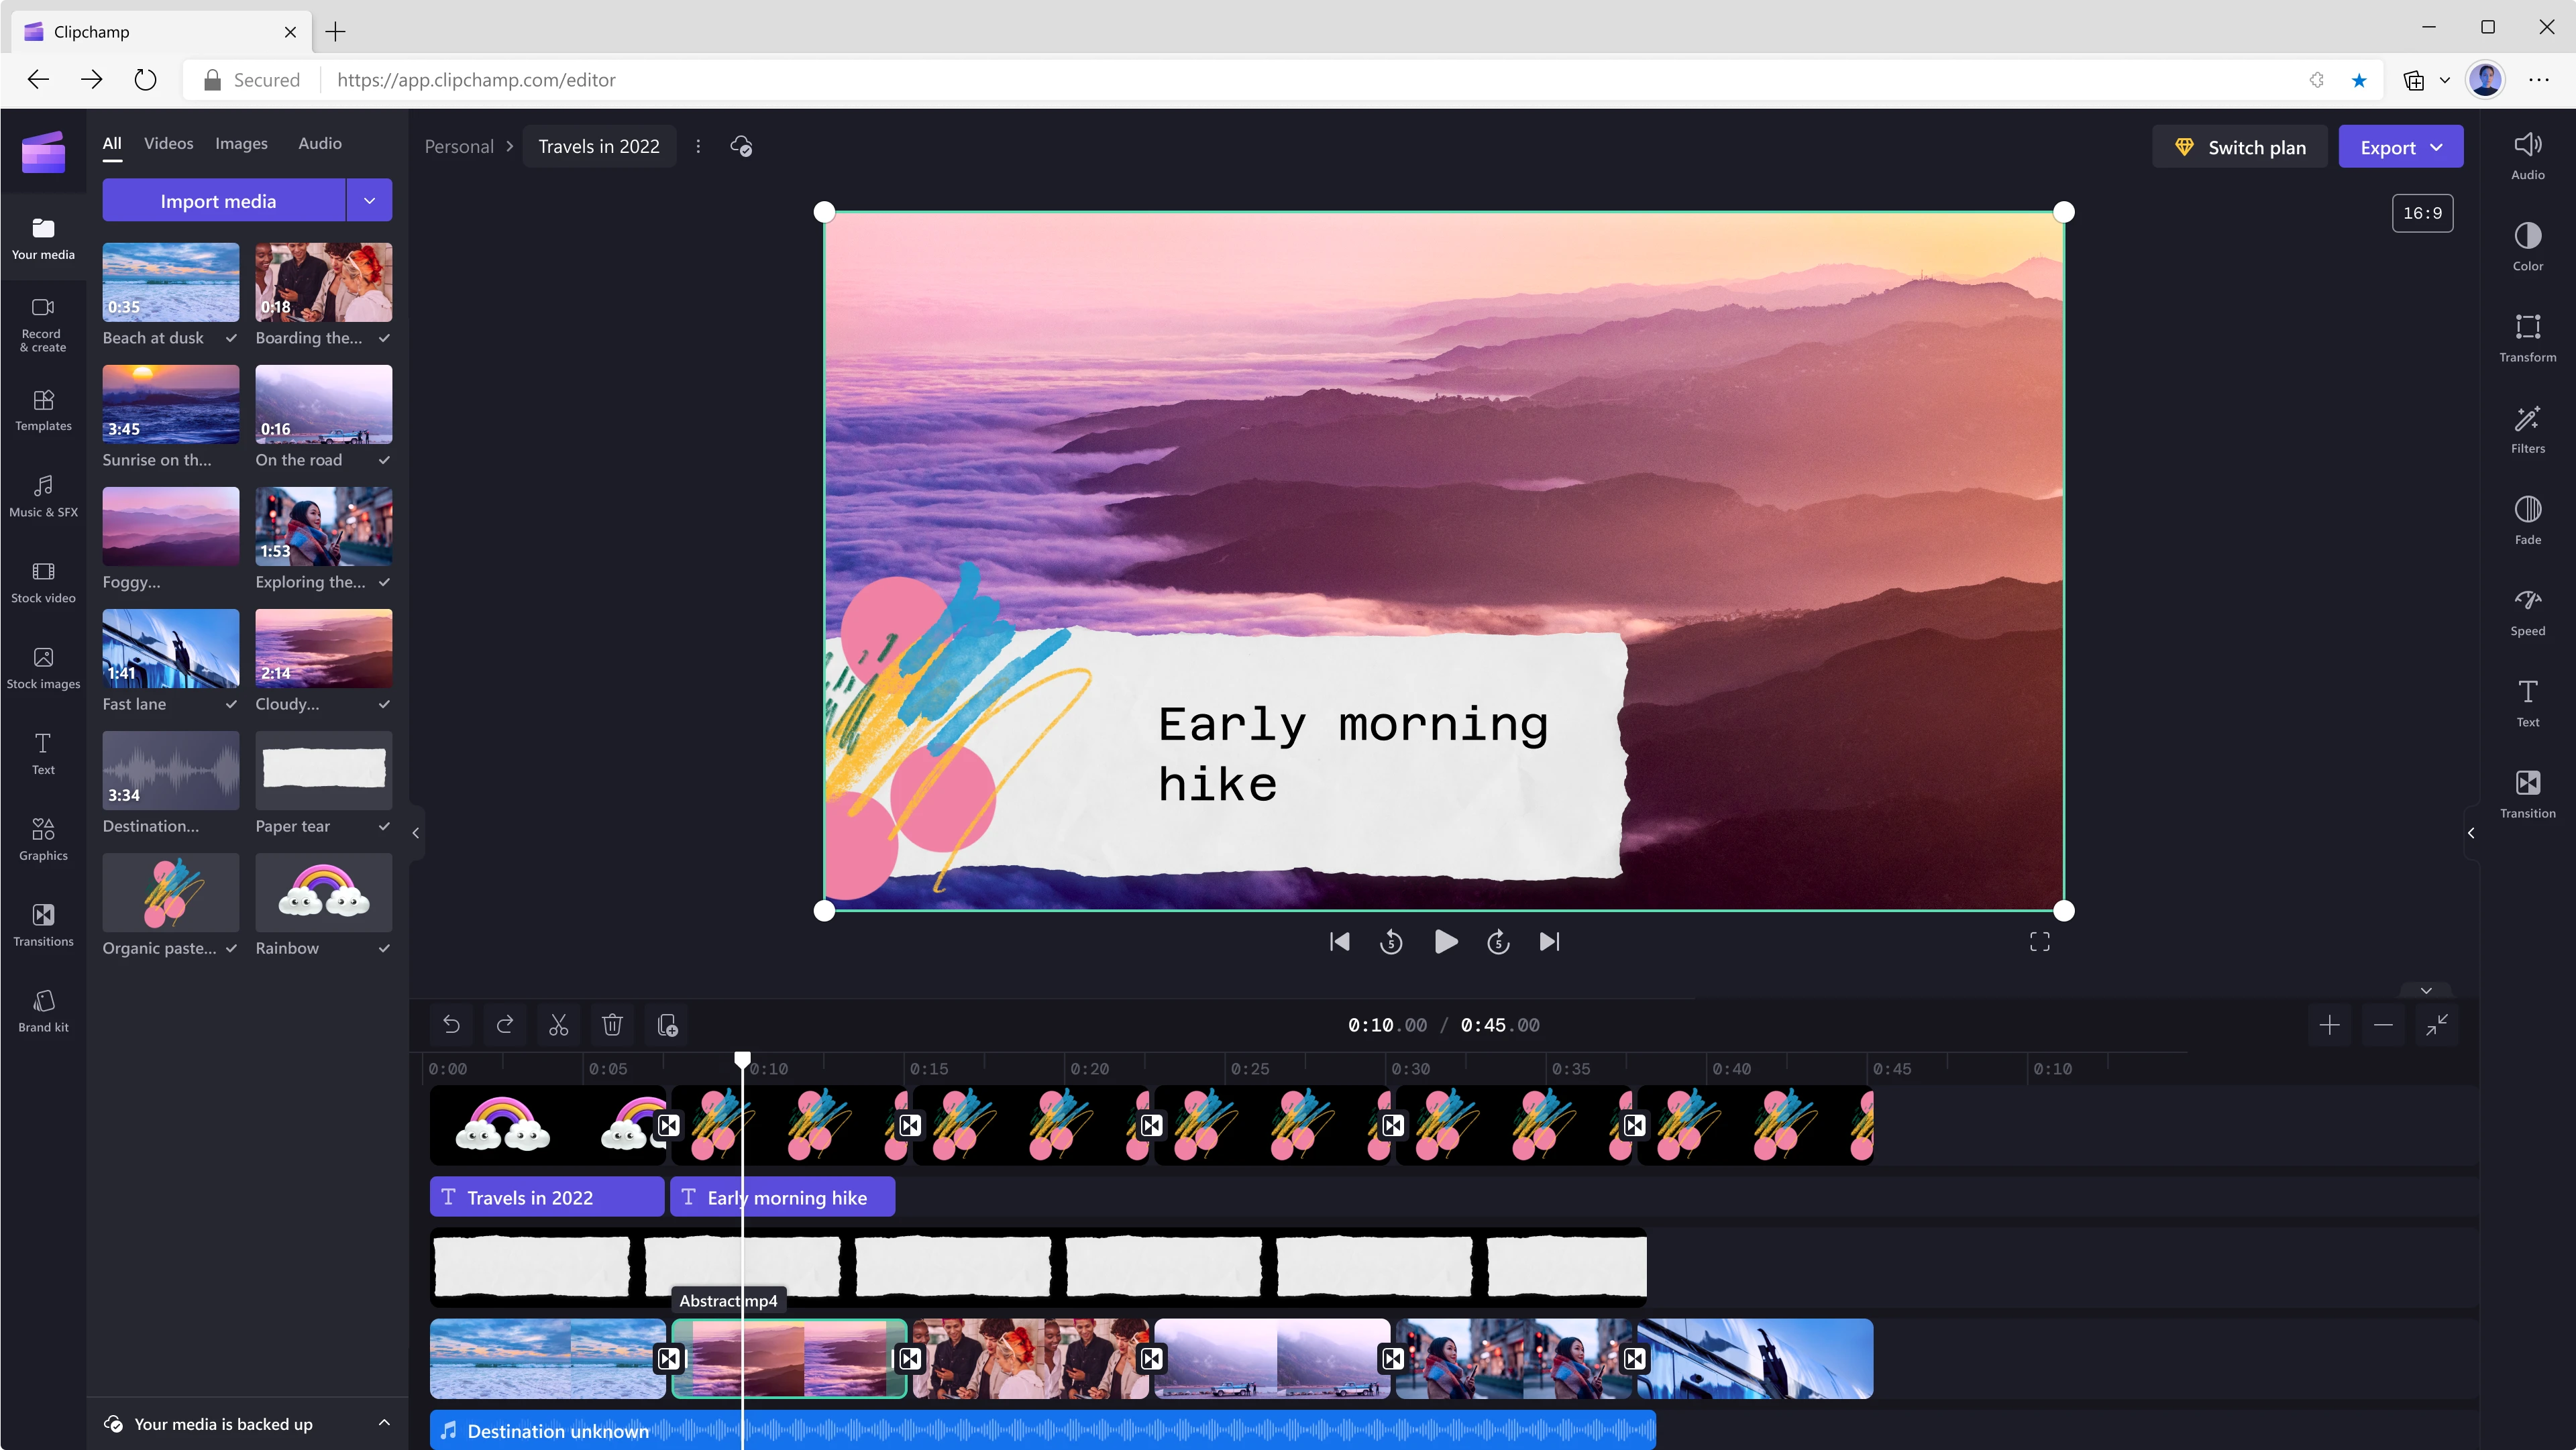 Користувач редагує 45-секундний відеоролик за допомогою Clipchamp. На кадрі (10-секунда) показано гори, хмари з фіолетовим відтінком і накладений текст Early morning hike (Ранковий похід). 